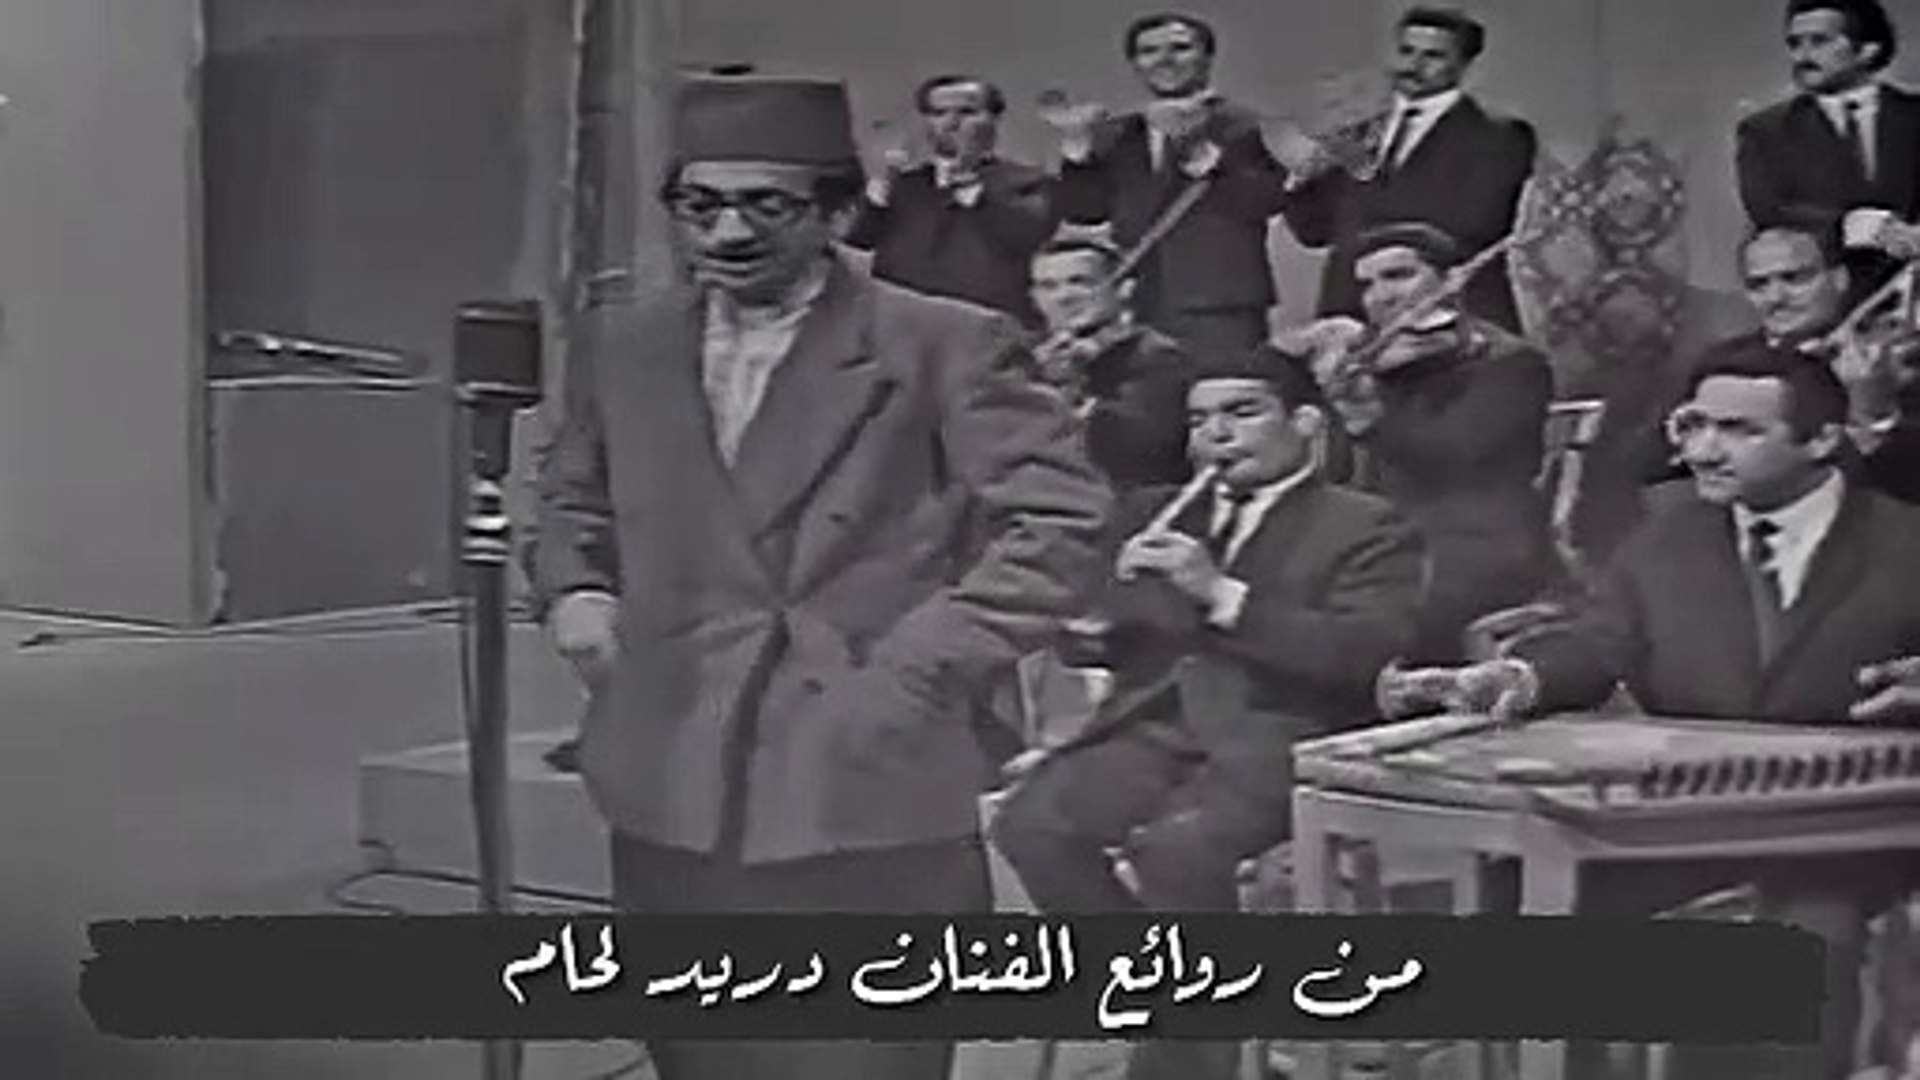 فيديو نادر للفنان الكوميدي دريد لحام و هو يغني واشرح لها - فيديو Dailymotion